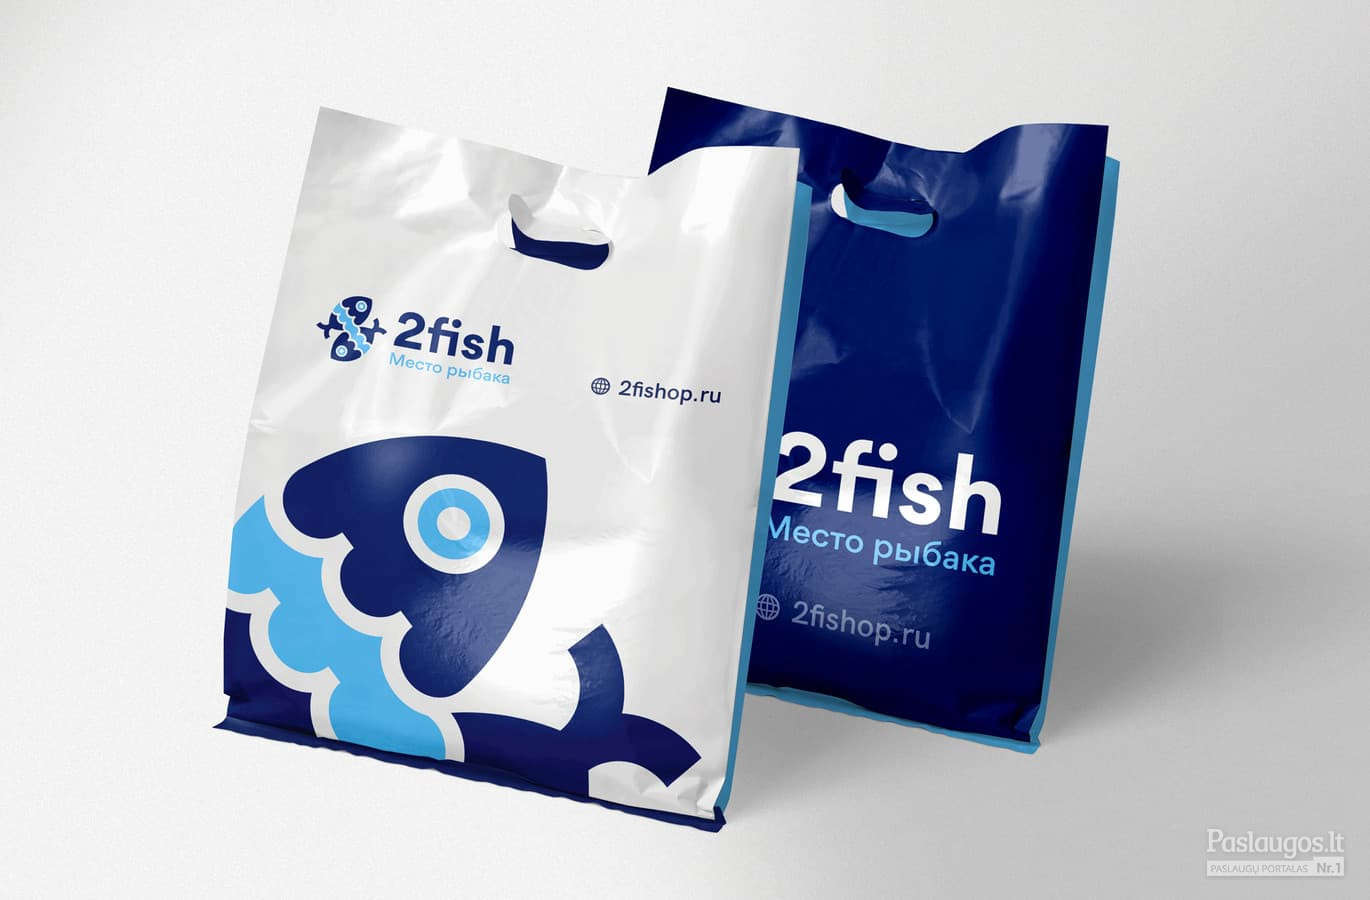 2fish - Žuklės reikmenys / Logotipas, firminis stilius, spauda / Kostas Vasarevicius - kostazzz@gmail.com